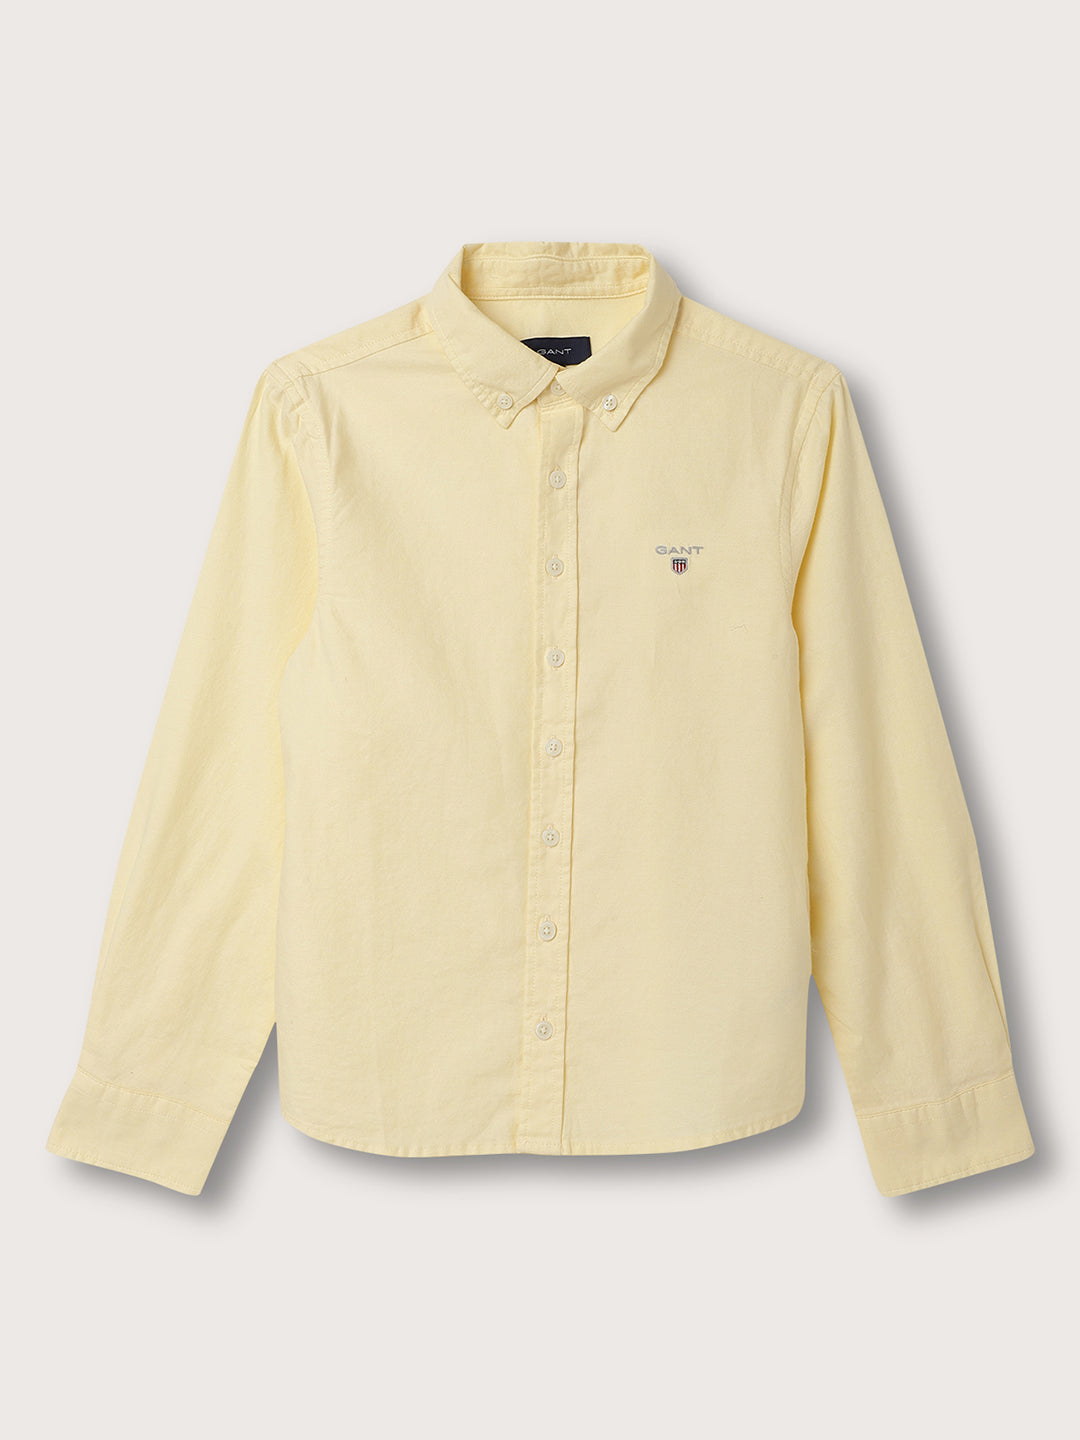 Gant Boys Button Down Collar Cotton Casual Shirt